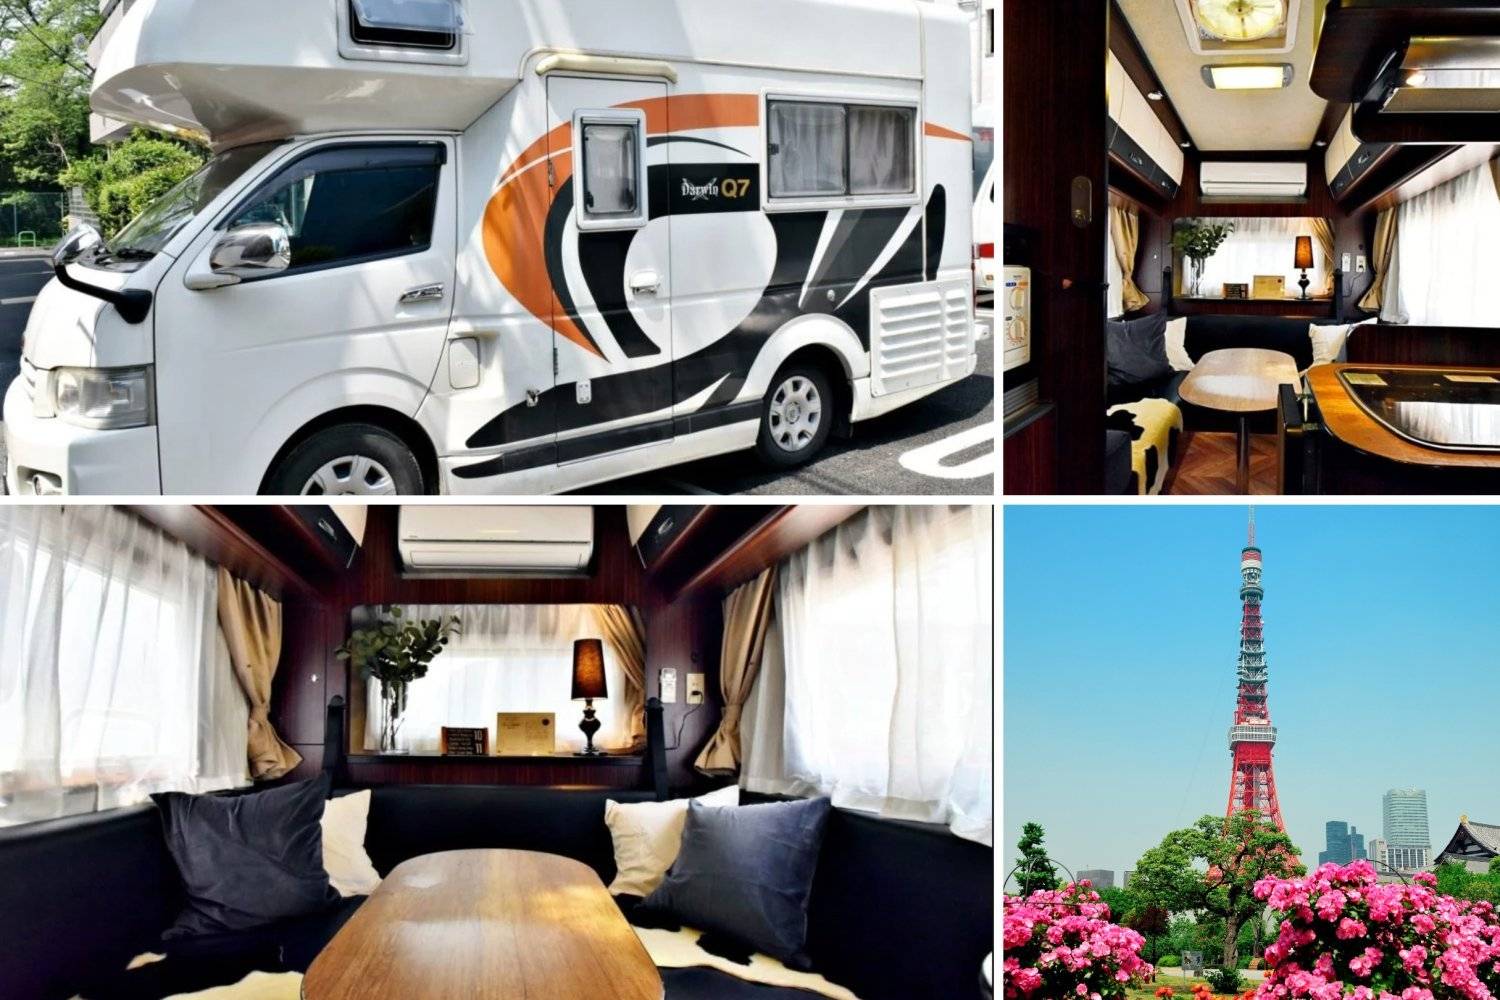 【Tokyo】Japan 6ppl RV Caravan 24 hours Rental Experience(JTMD2)